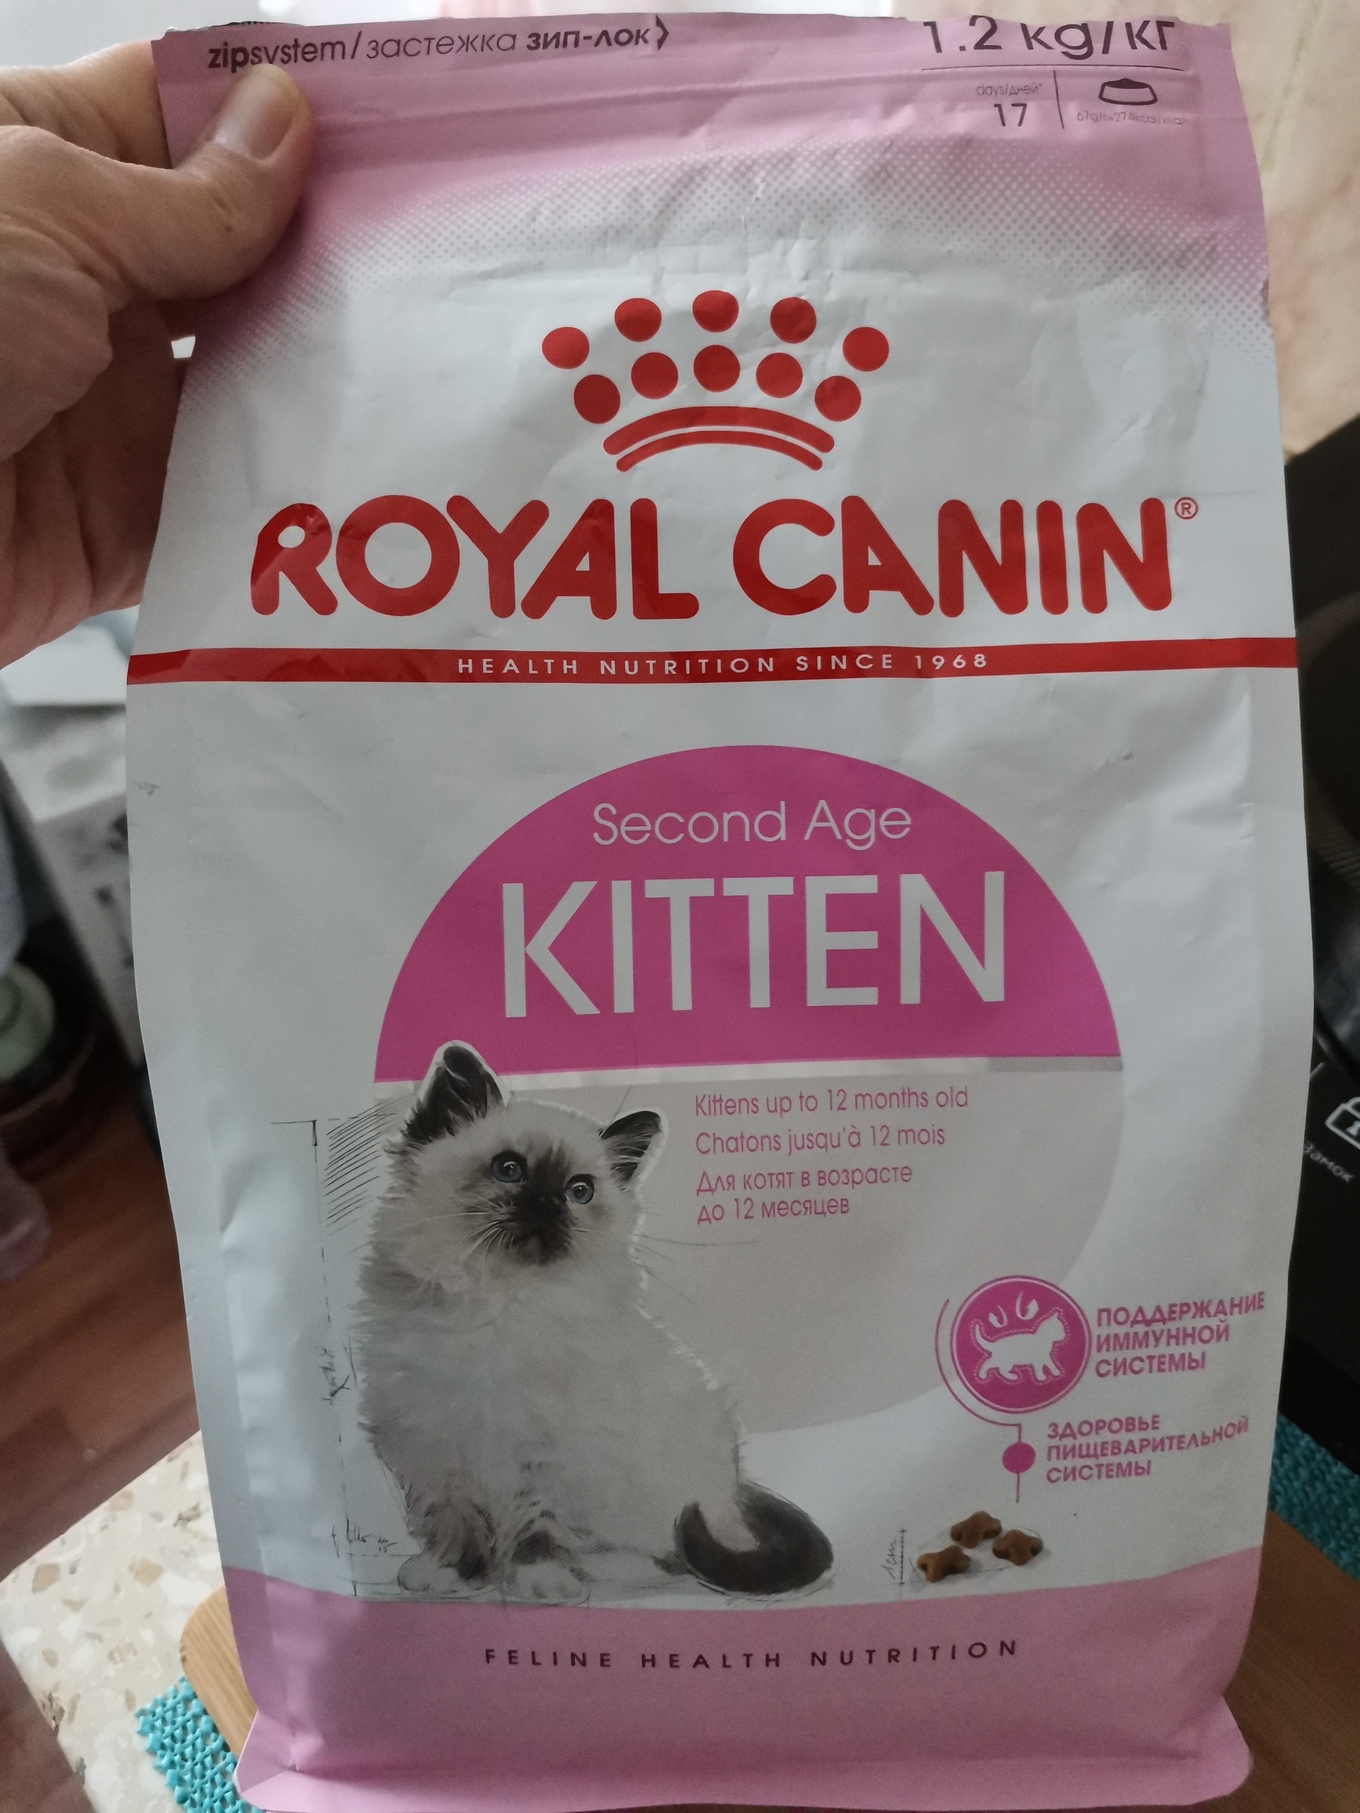 Royal canin 12 для кошек. Роял Канин Киттен 1,2 кг. Сухой корм Роял Канин Киттен 2 кг. Роял Канин для котят до 12 месяцев сухой. Сухой корм Royal Canin Kitten для котят до 12.